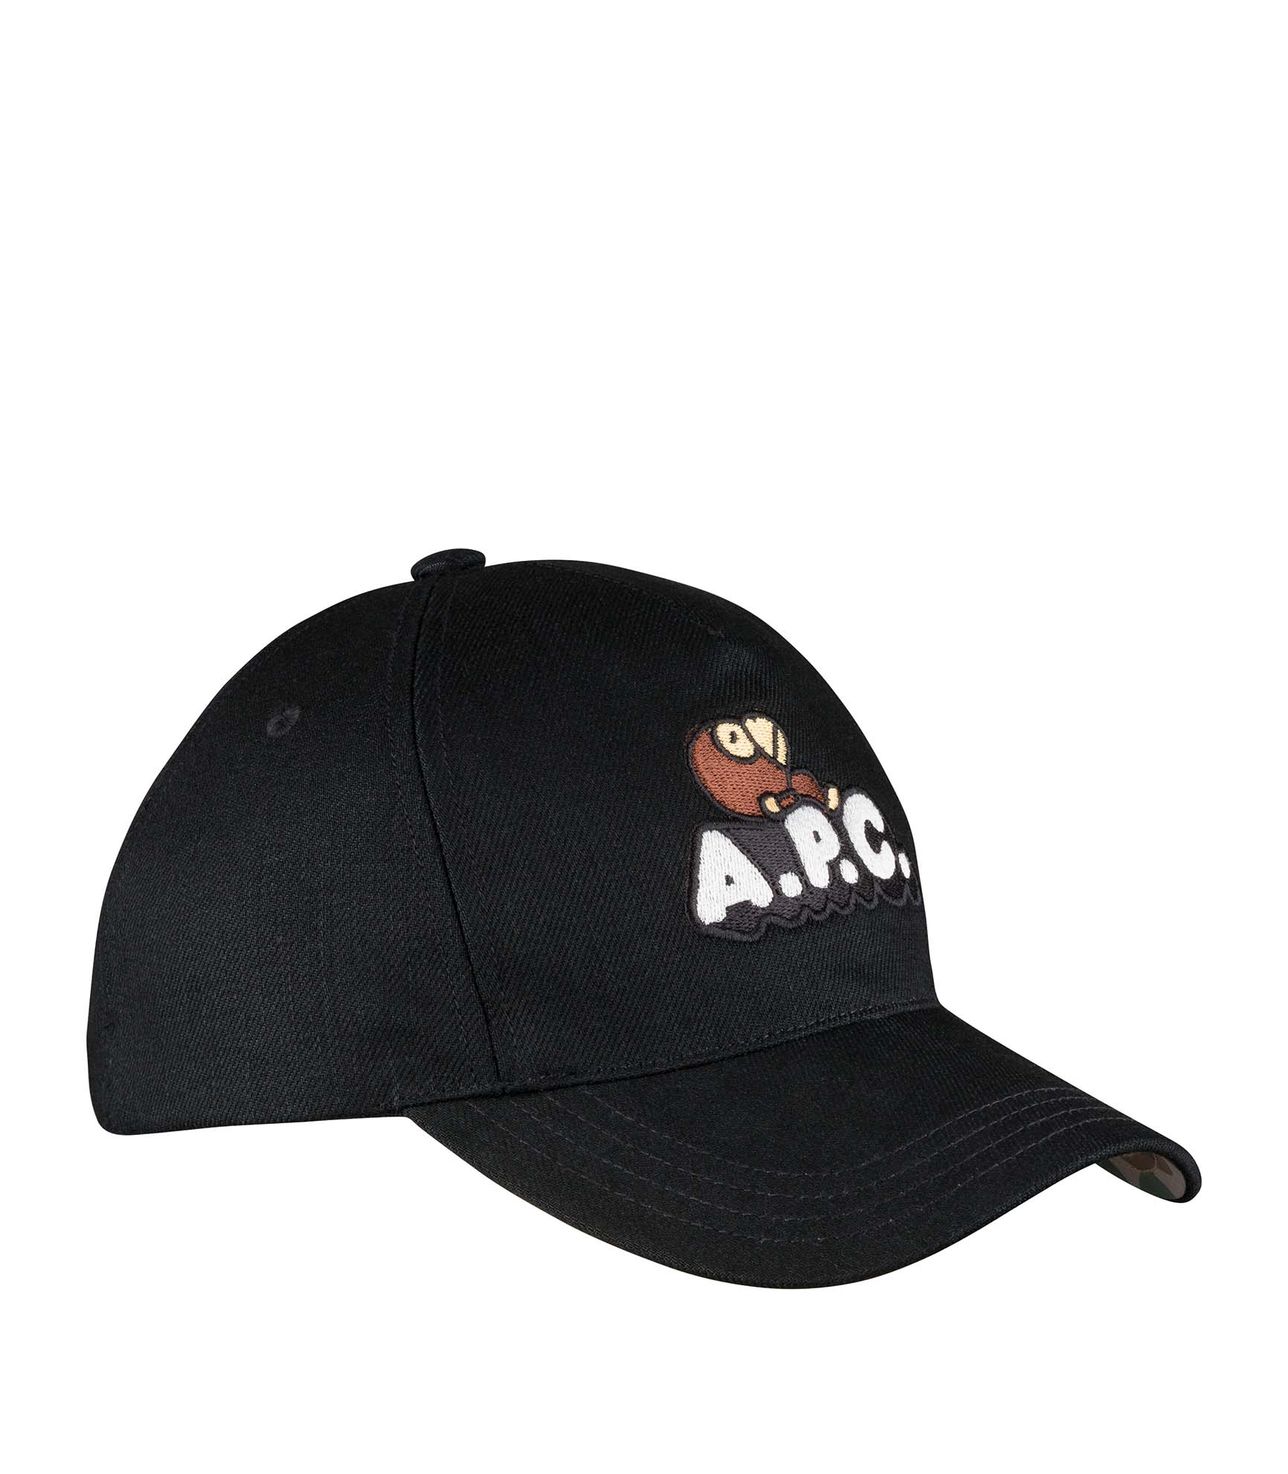 Moe baseball cap BLACK APC